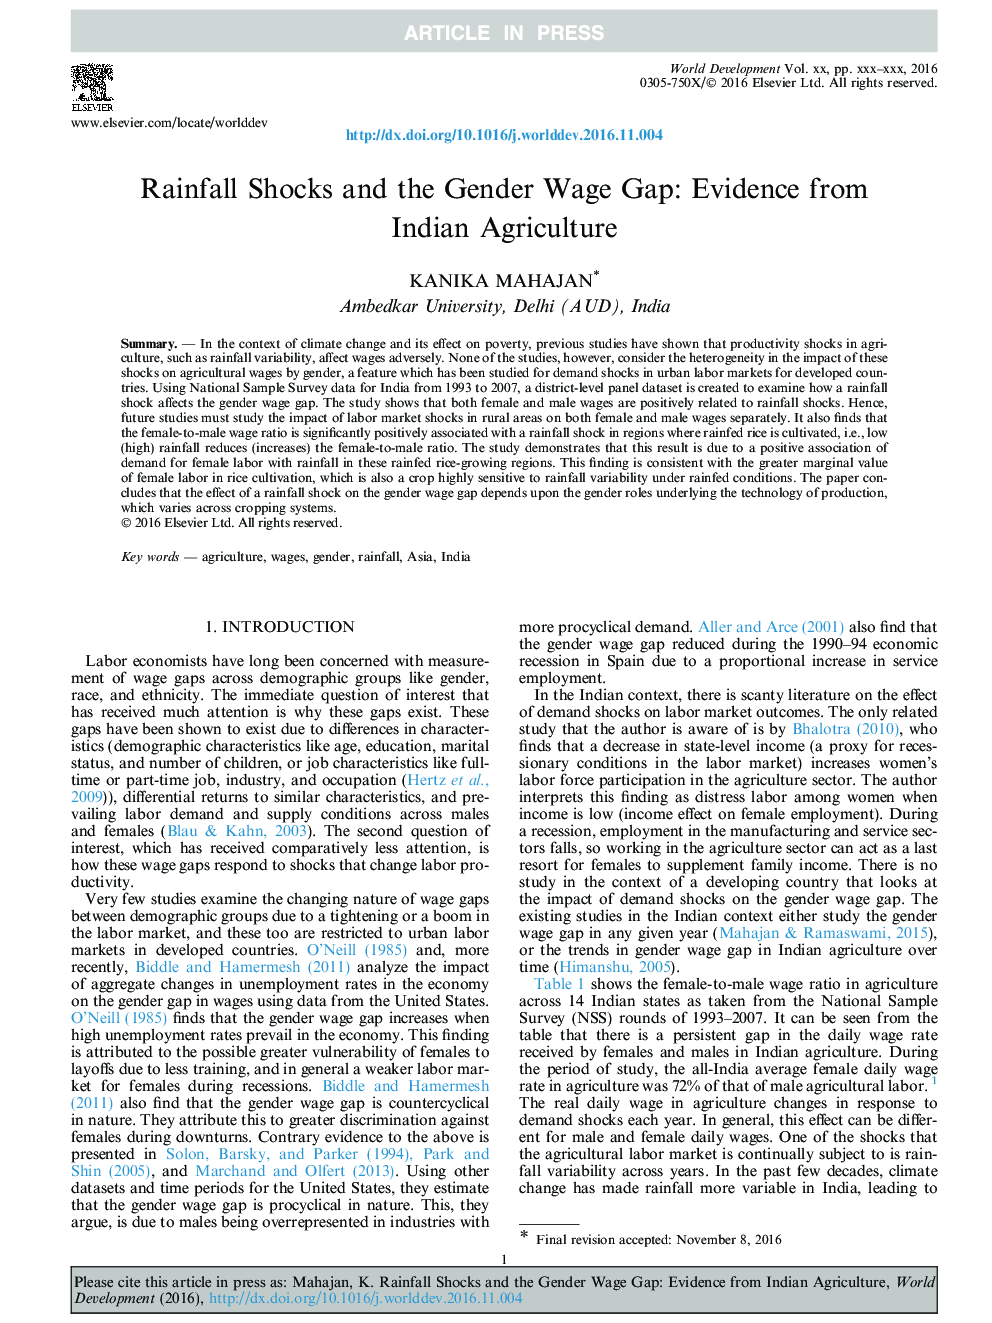 شوک های بارش و ناامنی جنسیتی: شواهدی از کشاورزی هند 